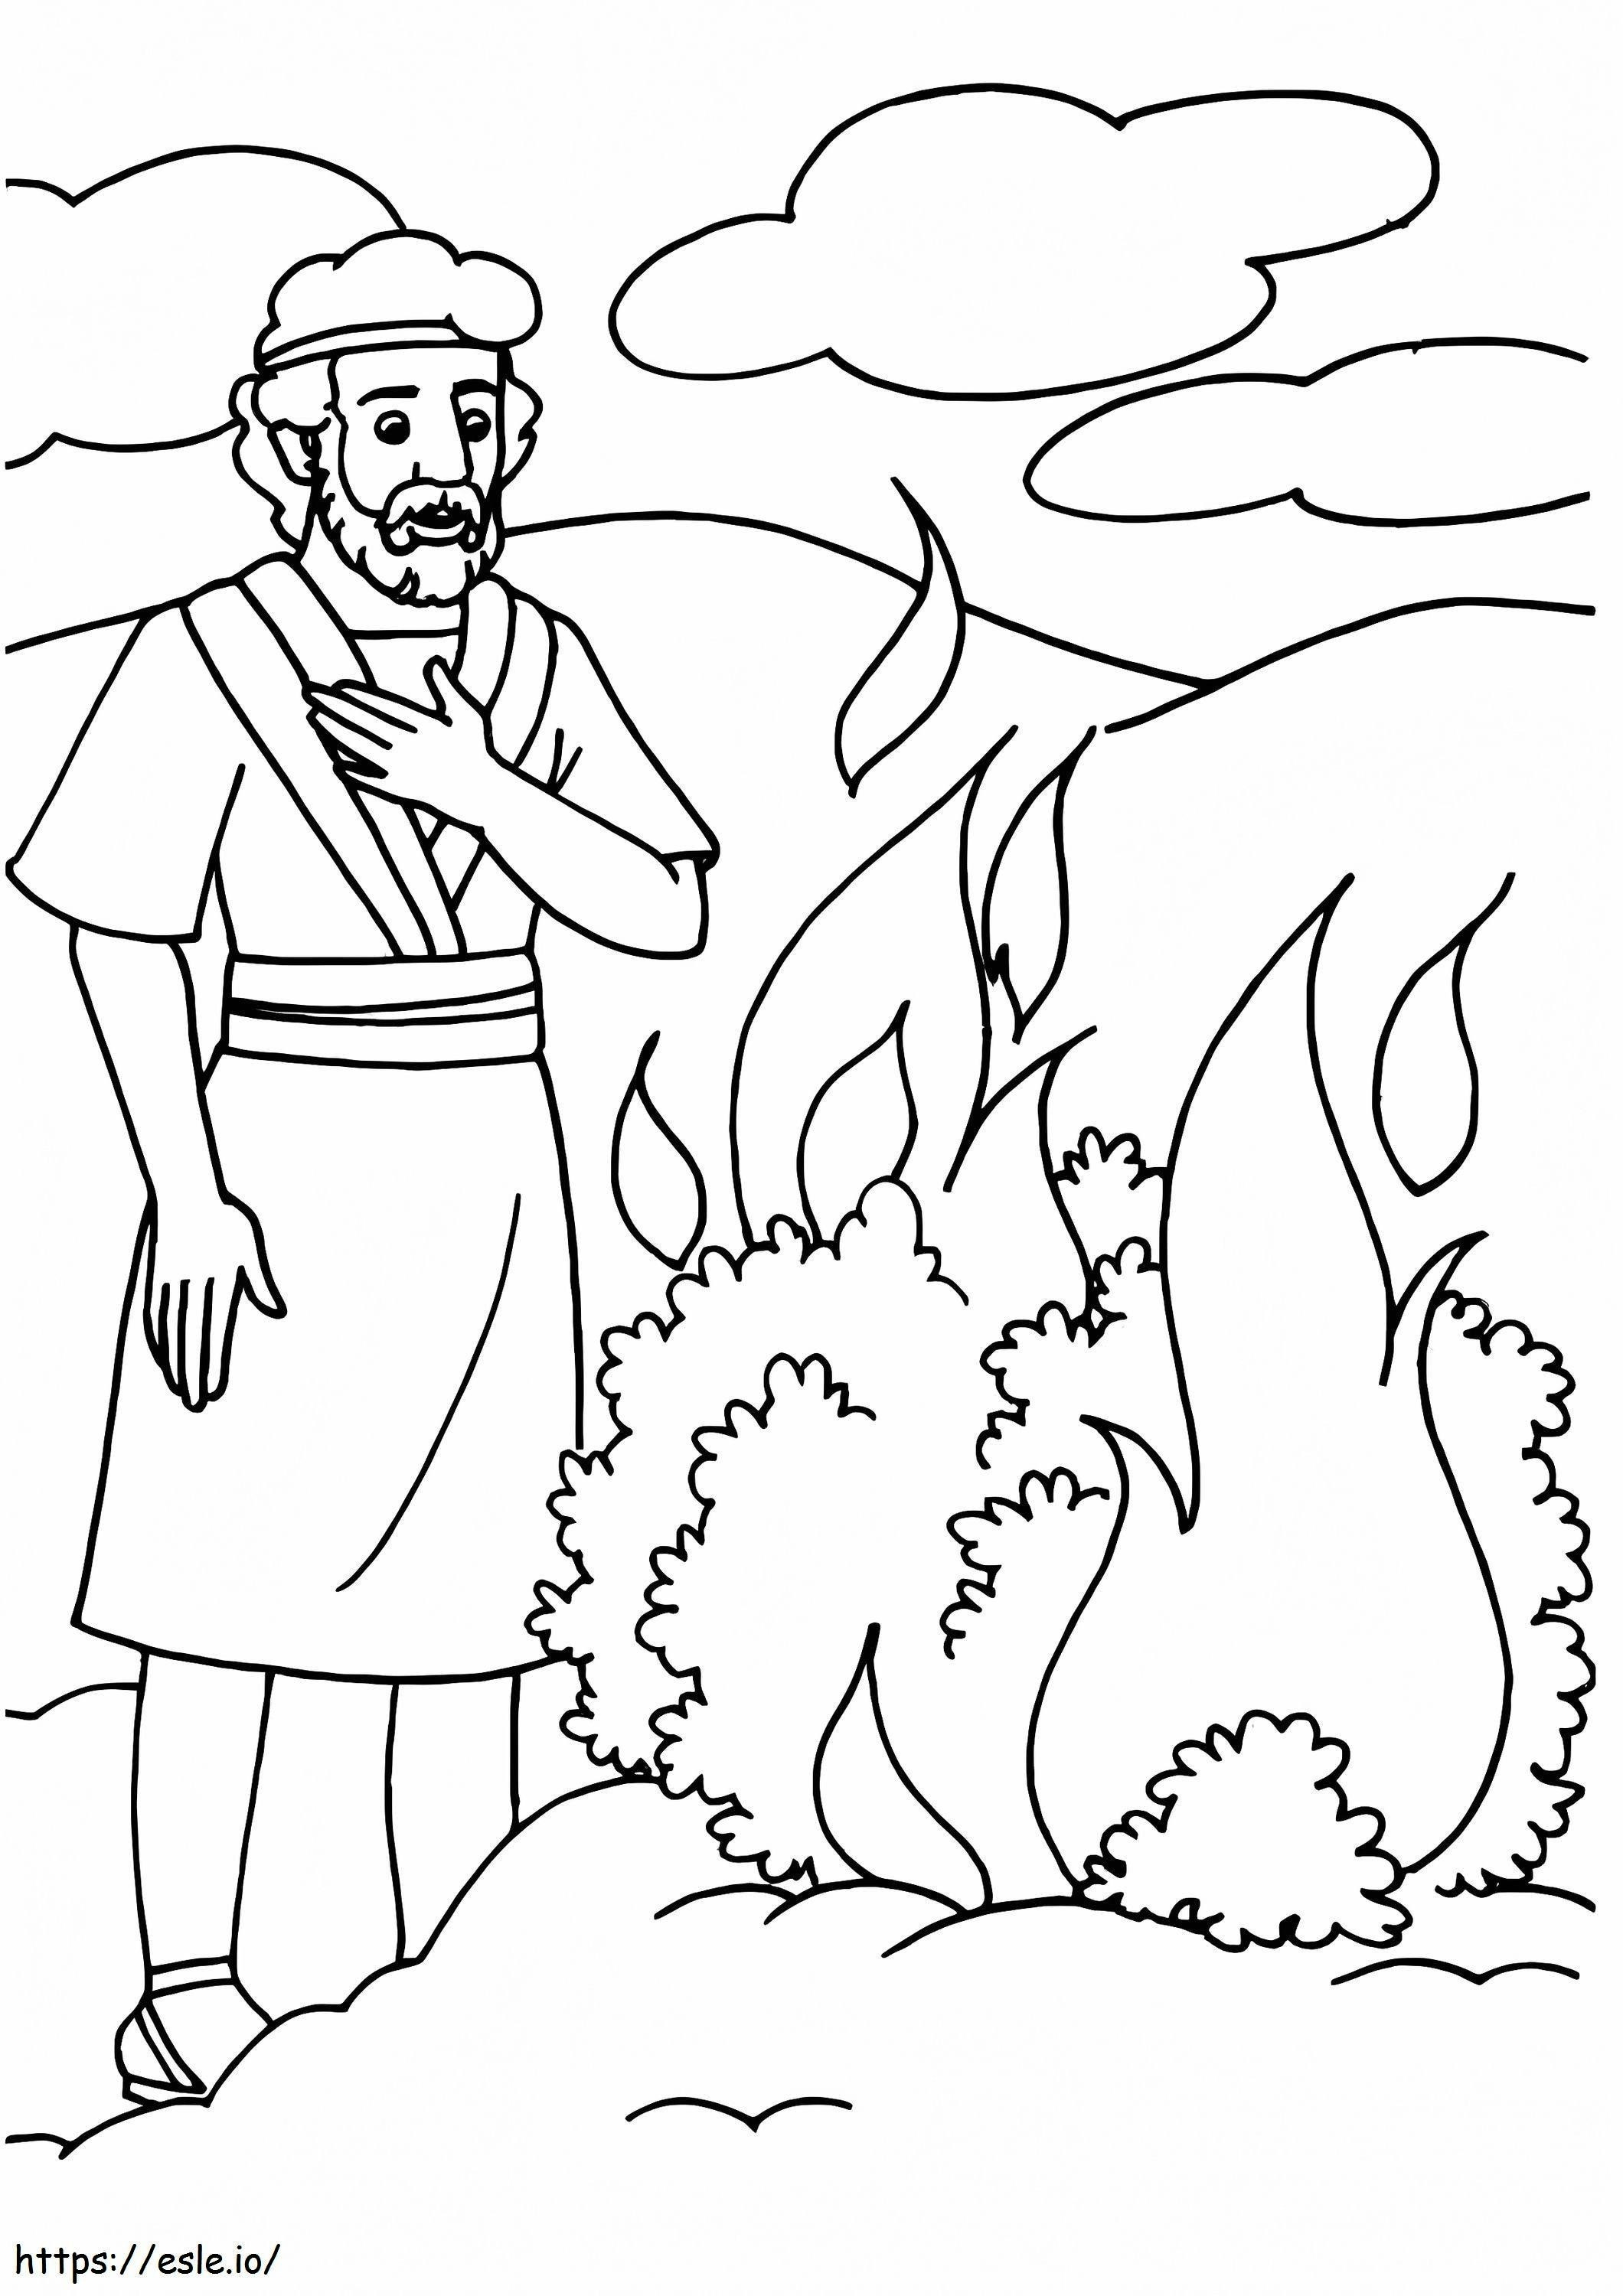 Mosè e il roveto ardente da colorare